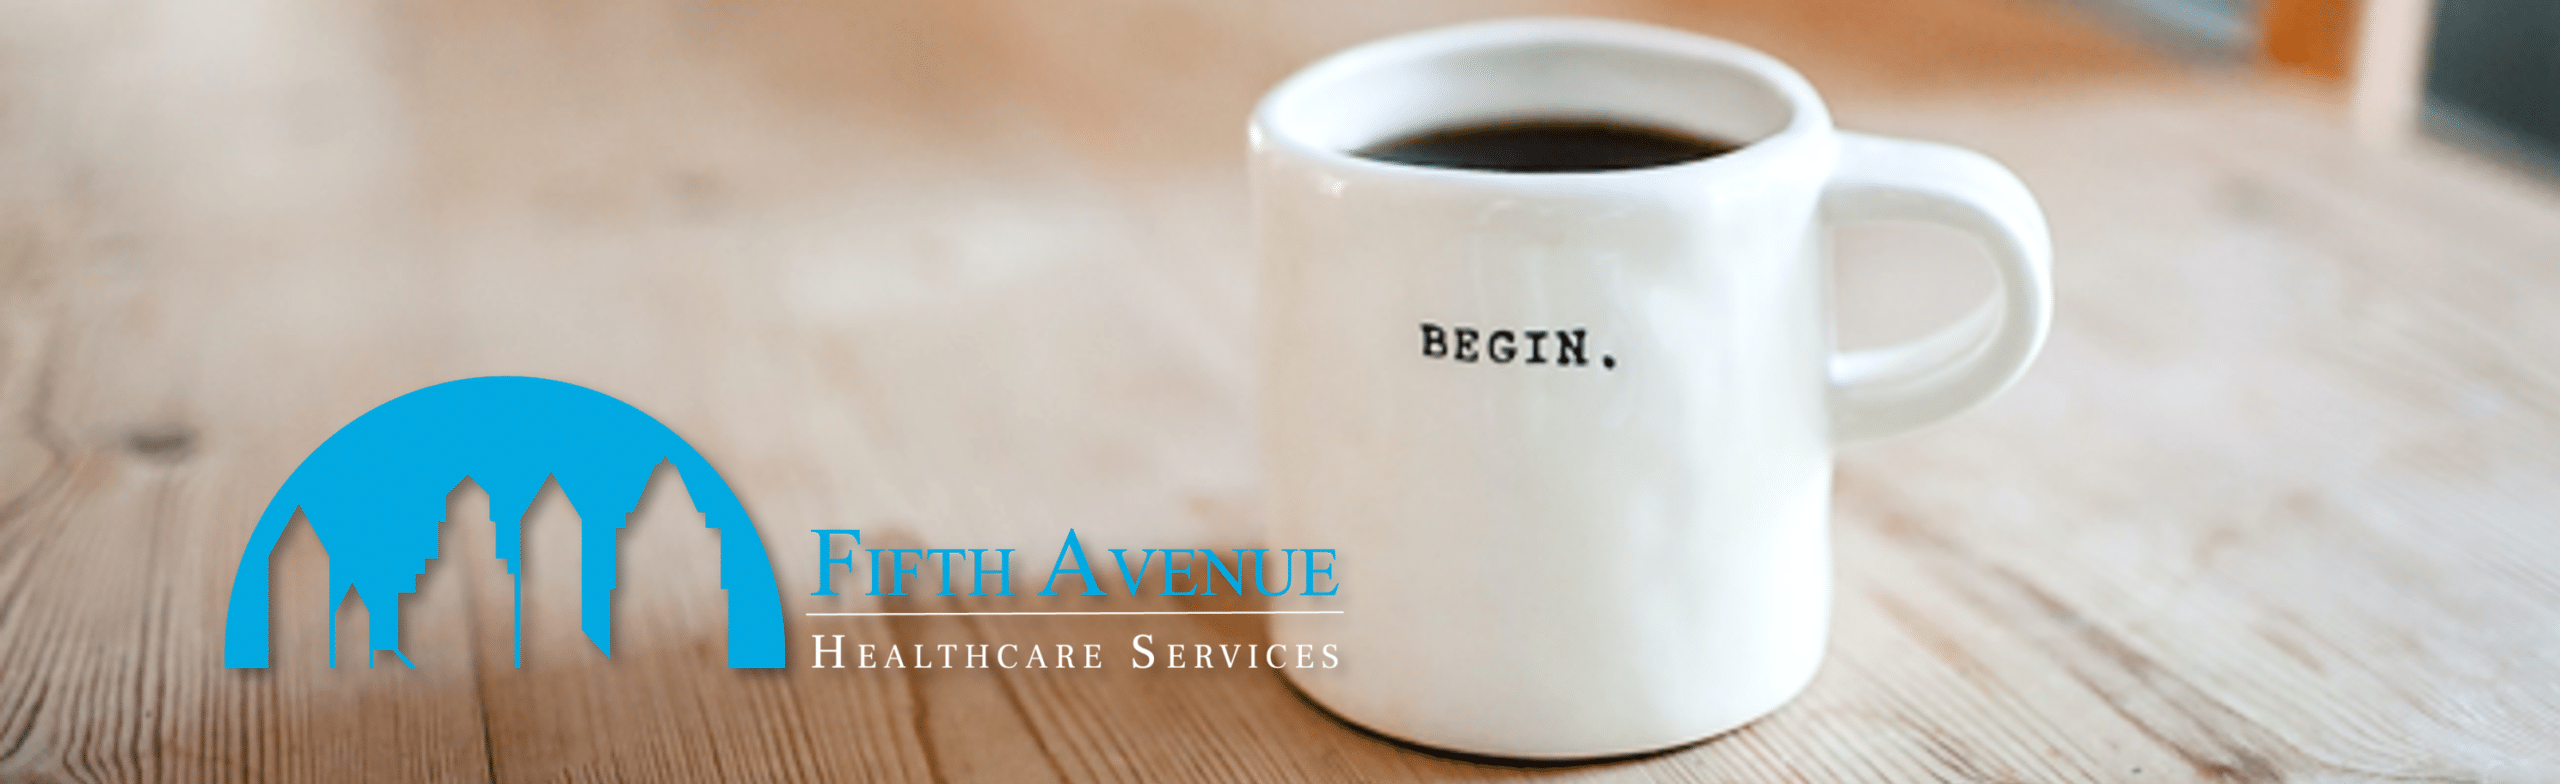 Fifth Avenue Healthcare Services Begin